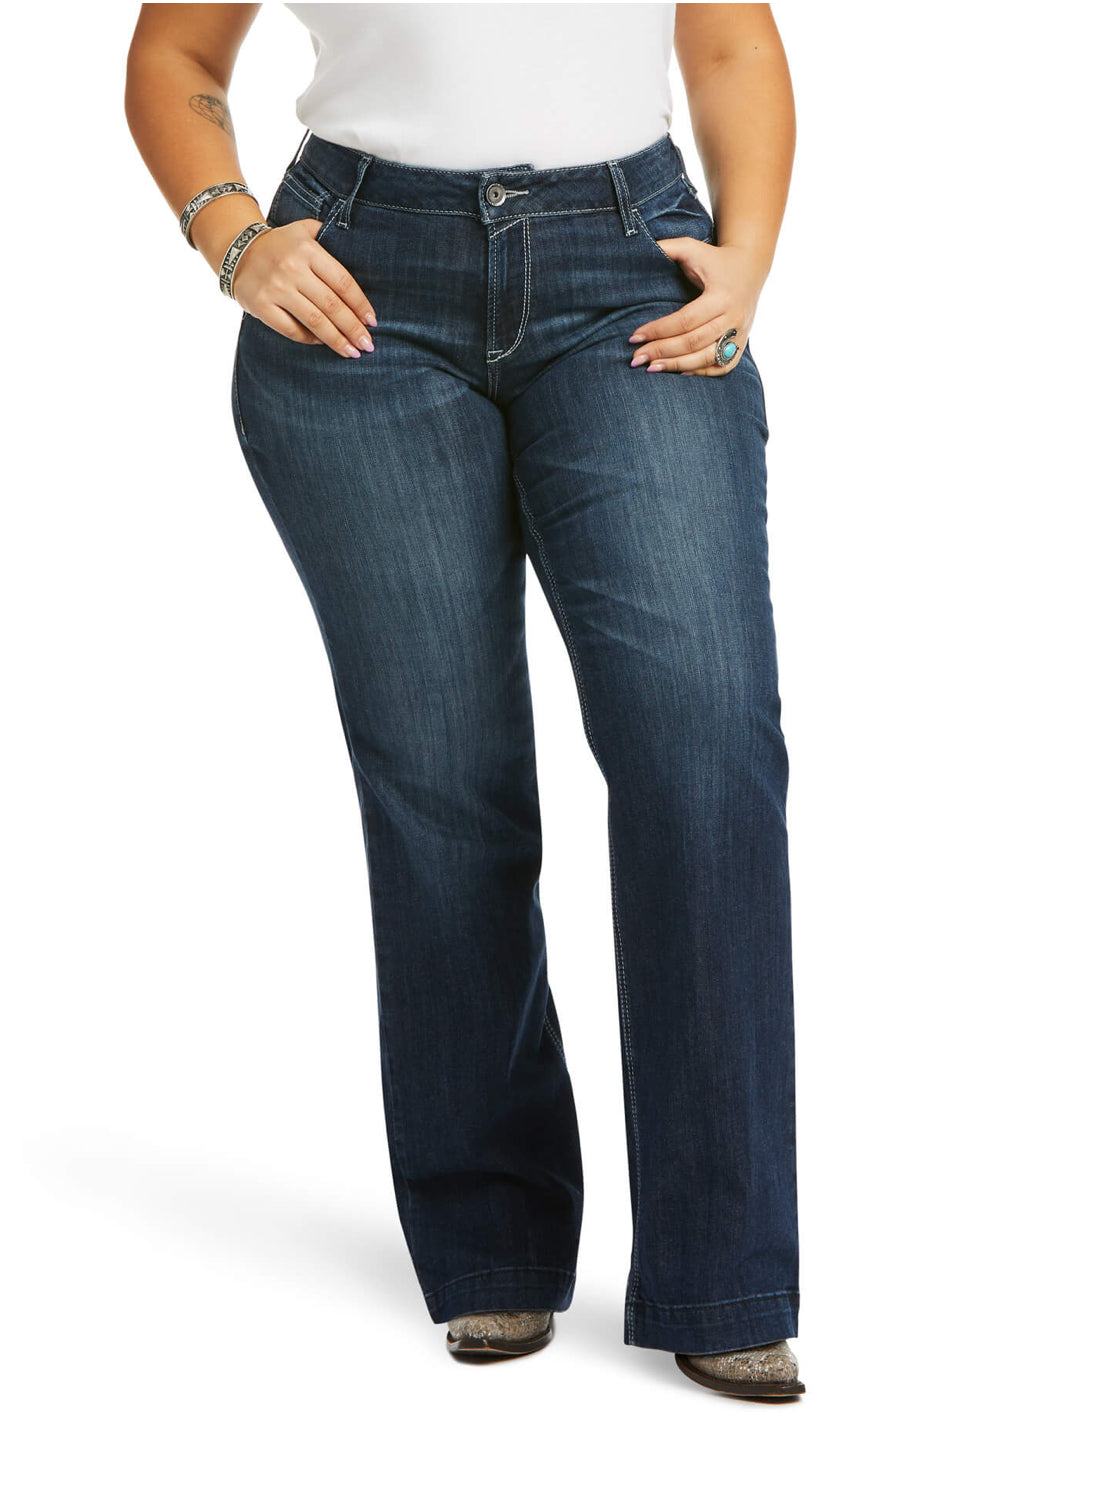 Ariat Trouser Mid Rise Melanie Wide Leg Jean (7690)